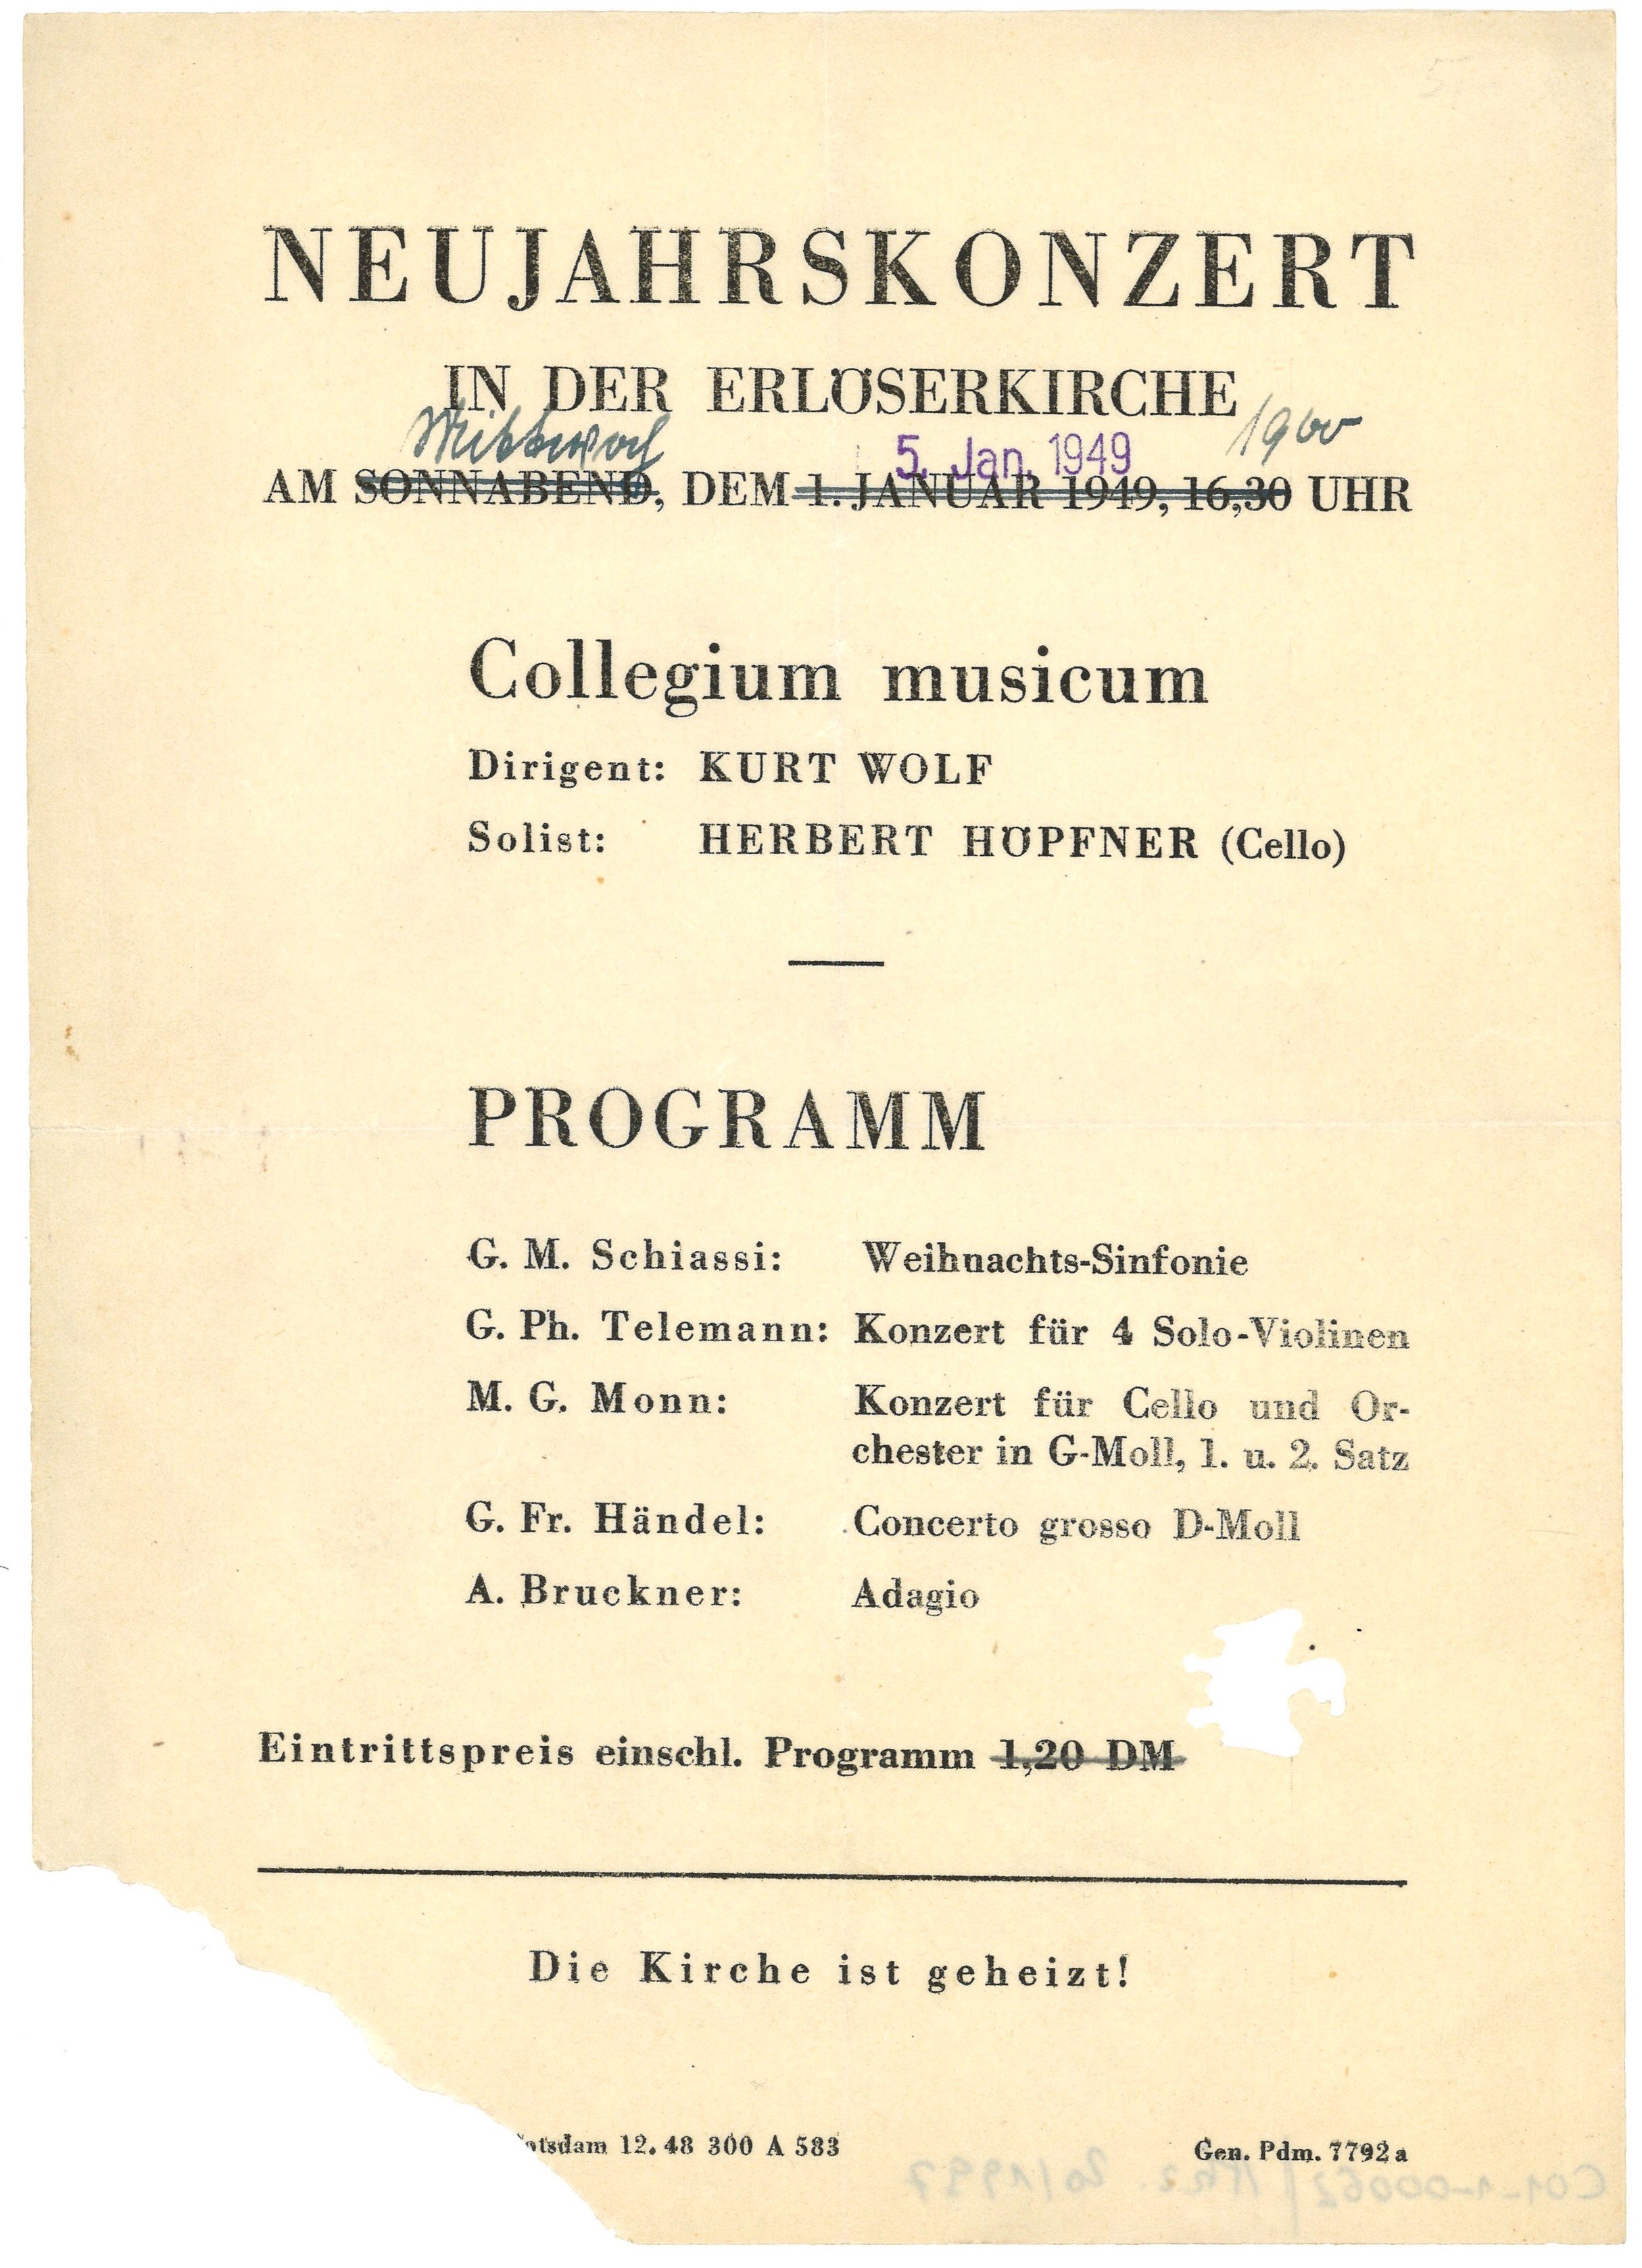 Programm zum Neujahrskonzert in der Erlöserkirche Potsdam am 5. Januar 1949 (Landesgeschichtliche Vereinigung für die Mark Brandenburg e.V., Archiv CC BY)